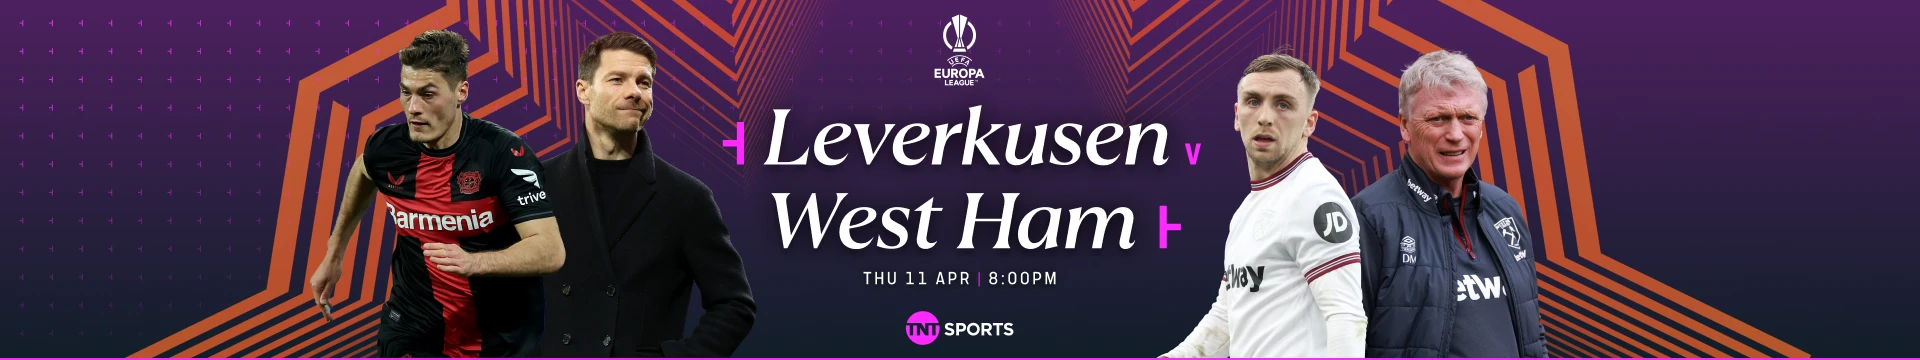 Leverkusen v West Ham Thursday 11 April at 8pm